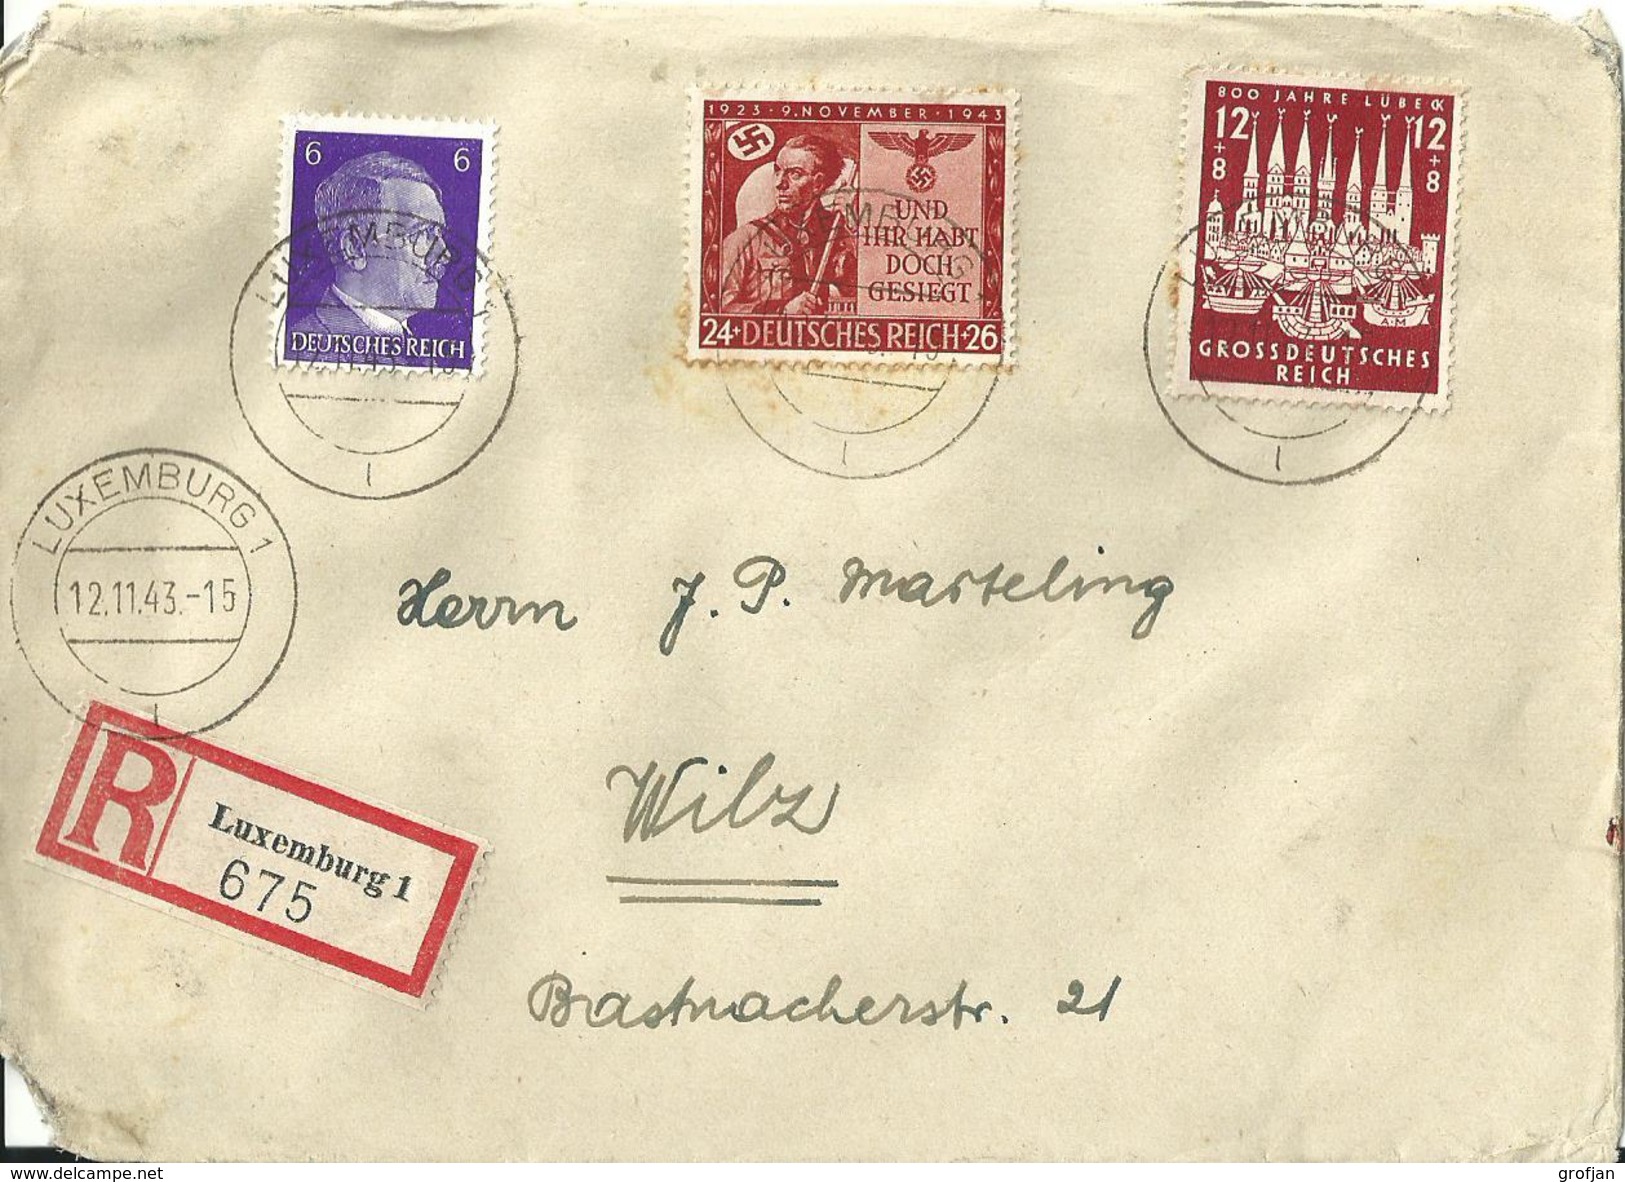 Besatzung Deutsches Reich Einschreibebrief Luxemburg - Wiltz 1943 / Luxemburg WWII - Occupation